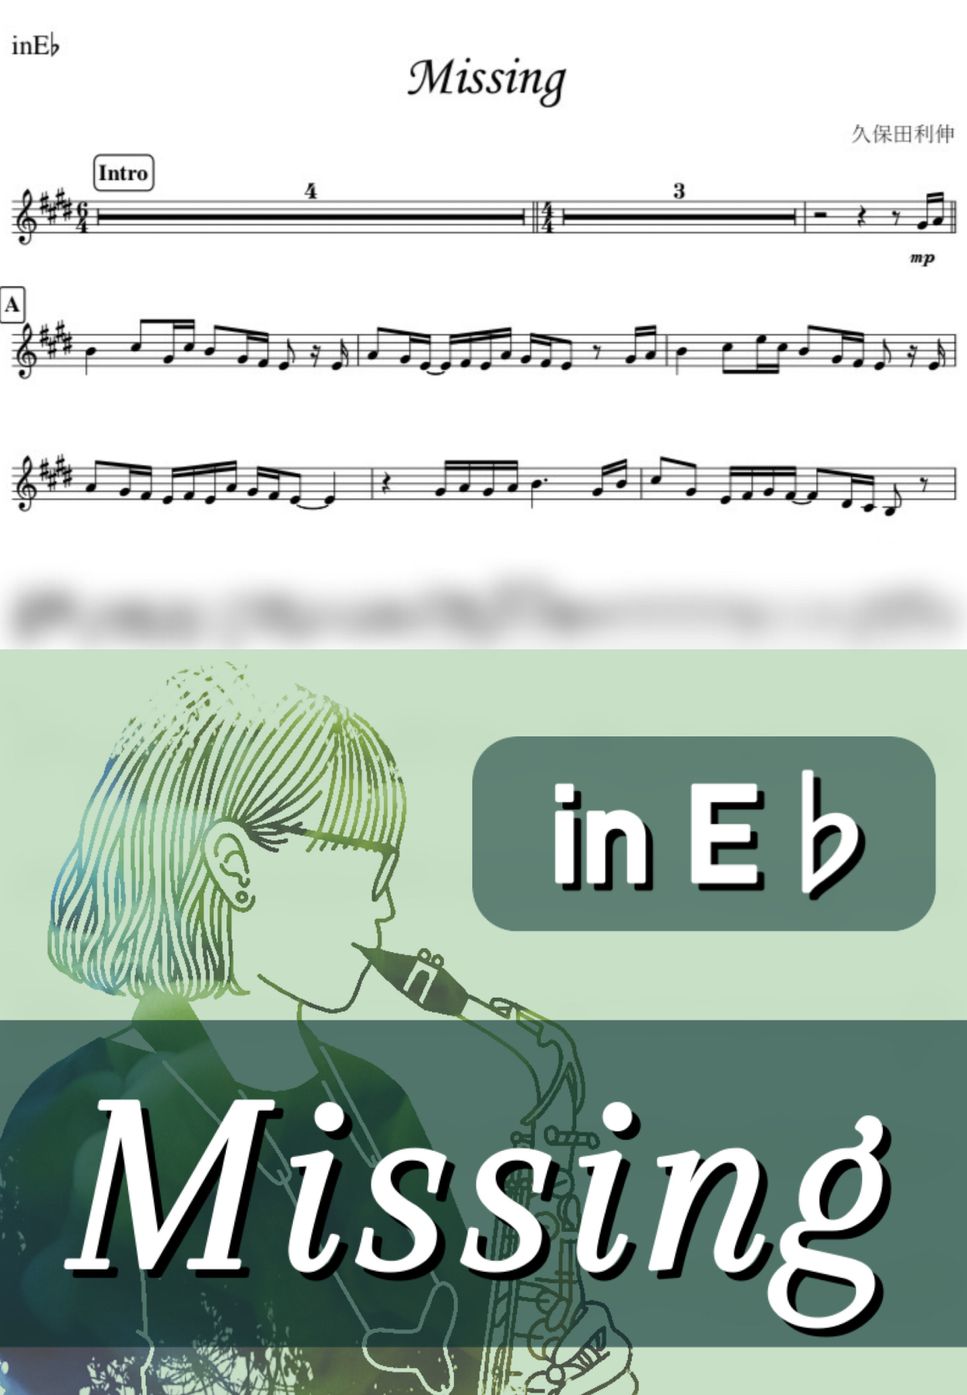 久保田利伸 - Missing (E♭) by kanamusic